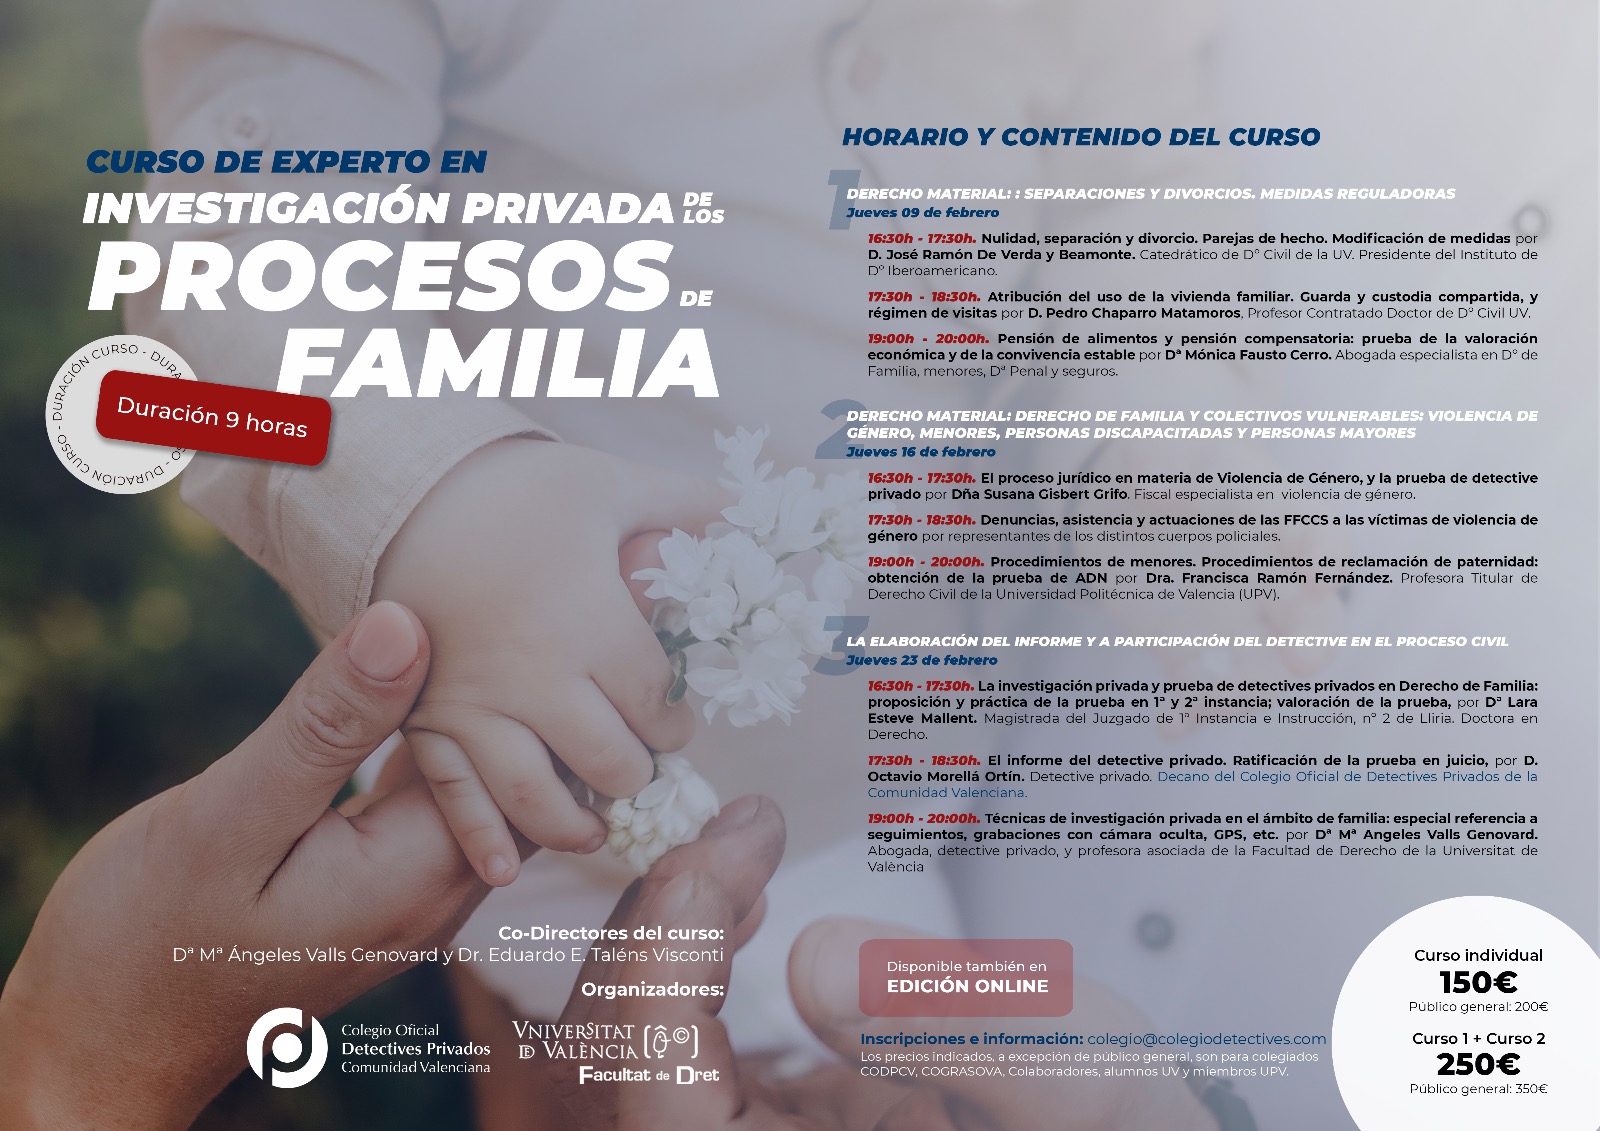 PROXIMOS CURSOS EN FEBRERO: FAMILIA Y LABORAL (INTERVENCIÓN DEL DETECTIVE)